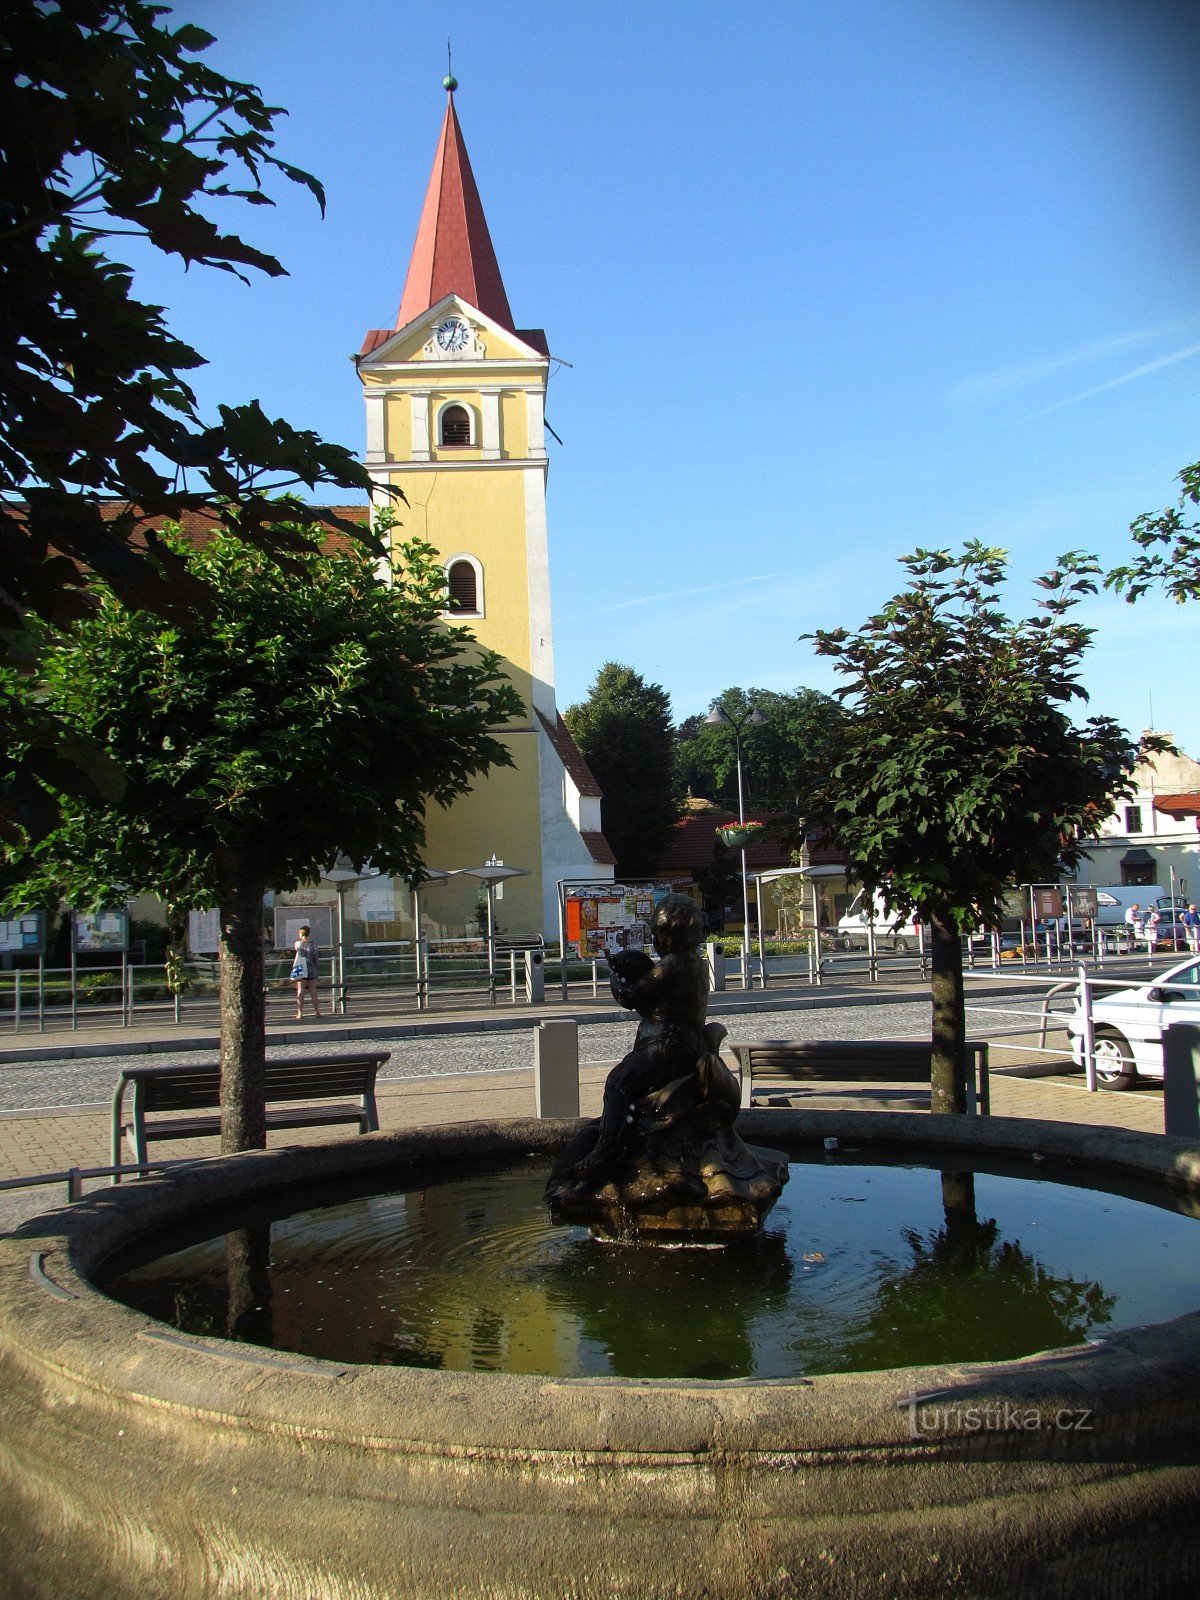 Koryčany - fontaine et église